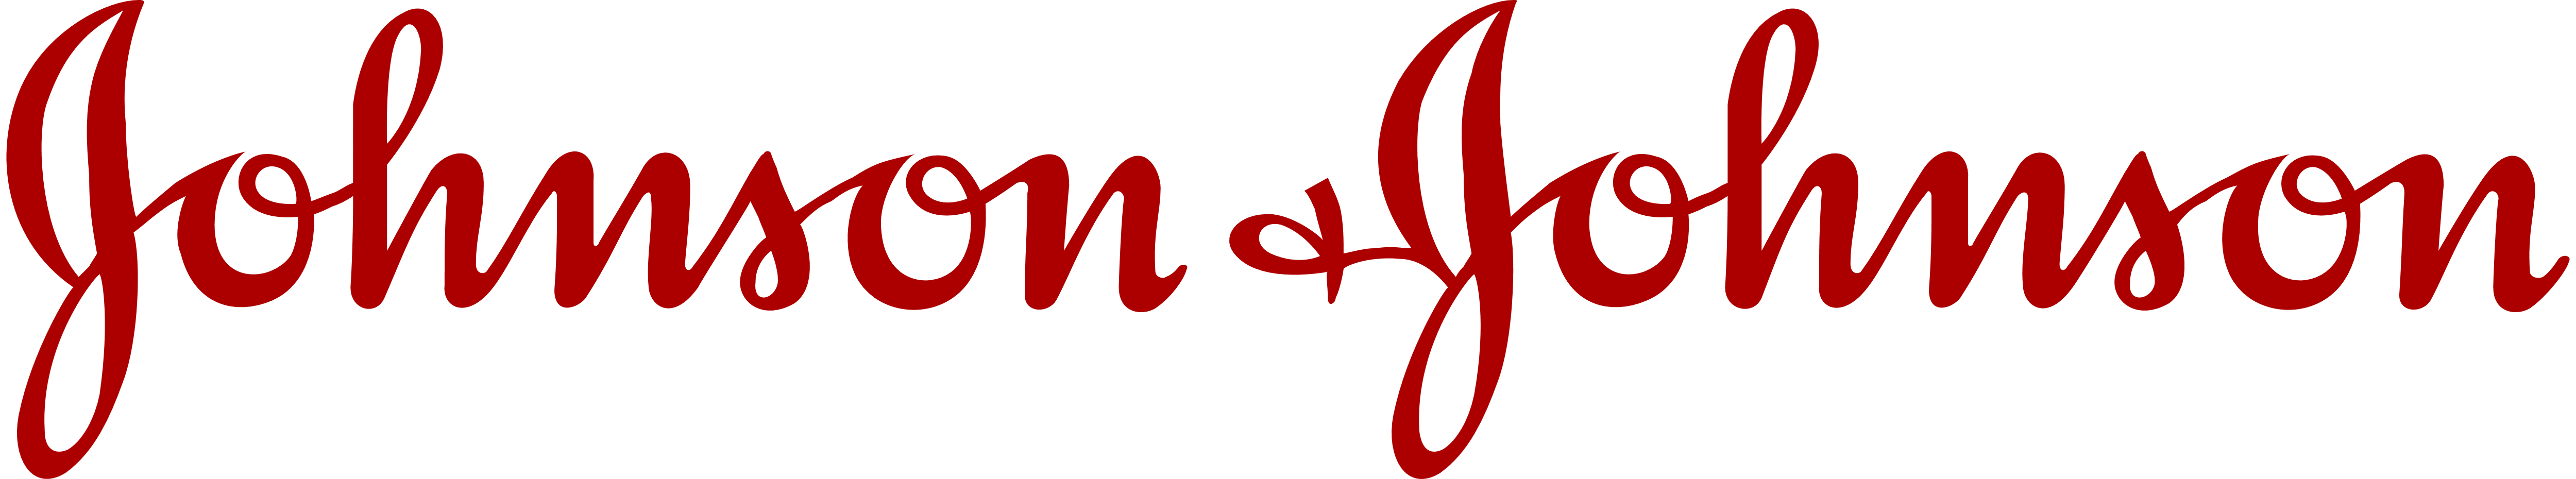 JNJ Logo - Johnson & Johnson – Logos Download